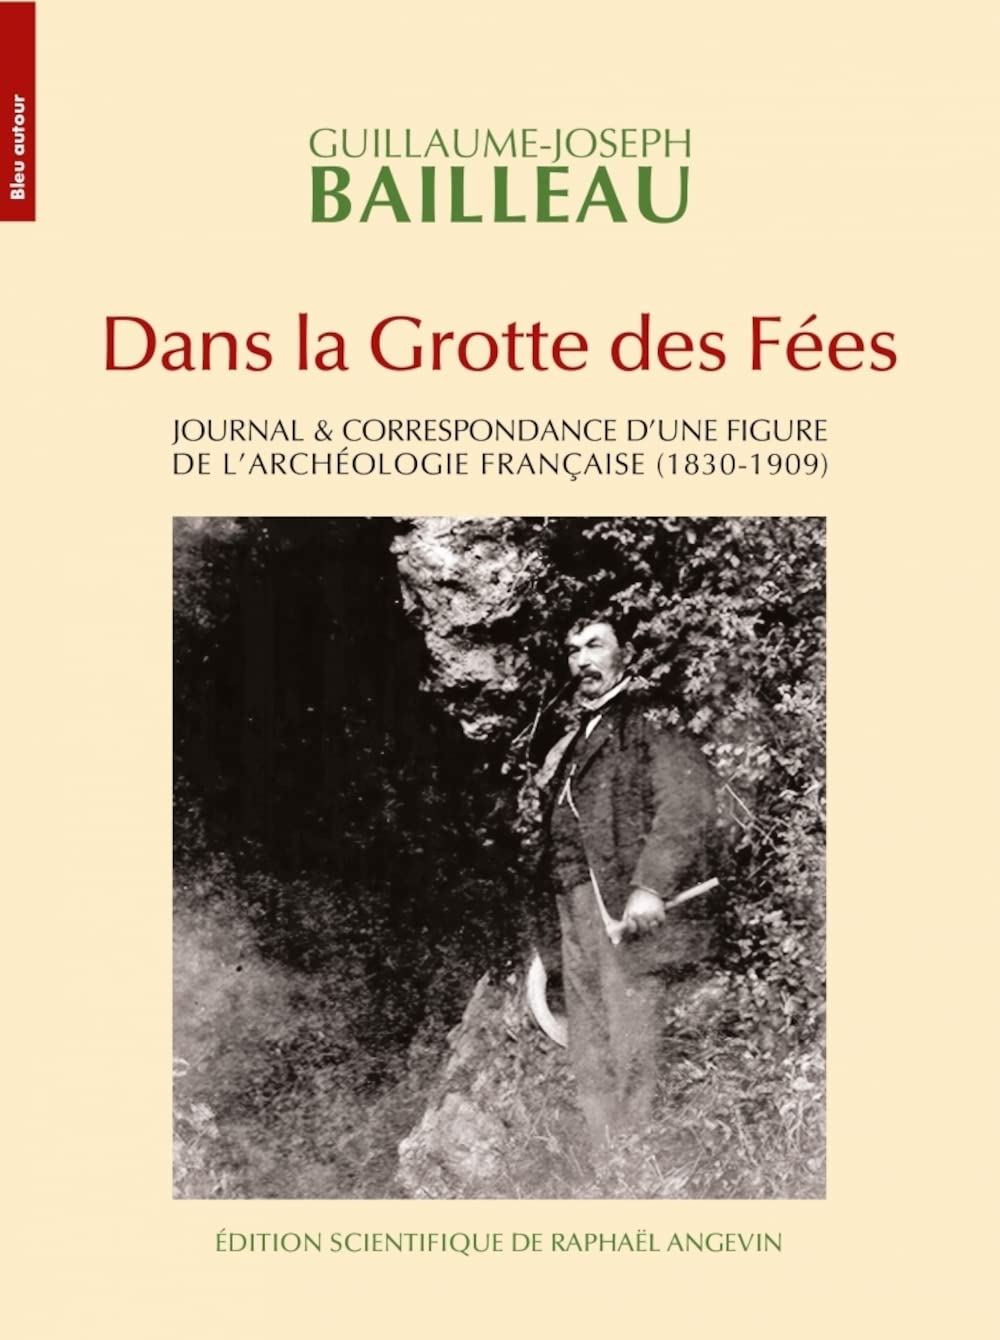 Dans la grotte des fées. Journal & correspondance d'une figure de l'archéologie française (1830-1909), 2023, 496 p.